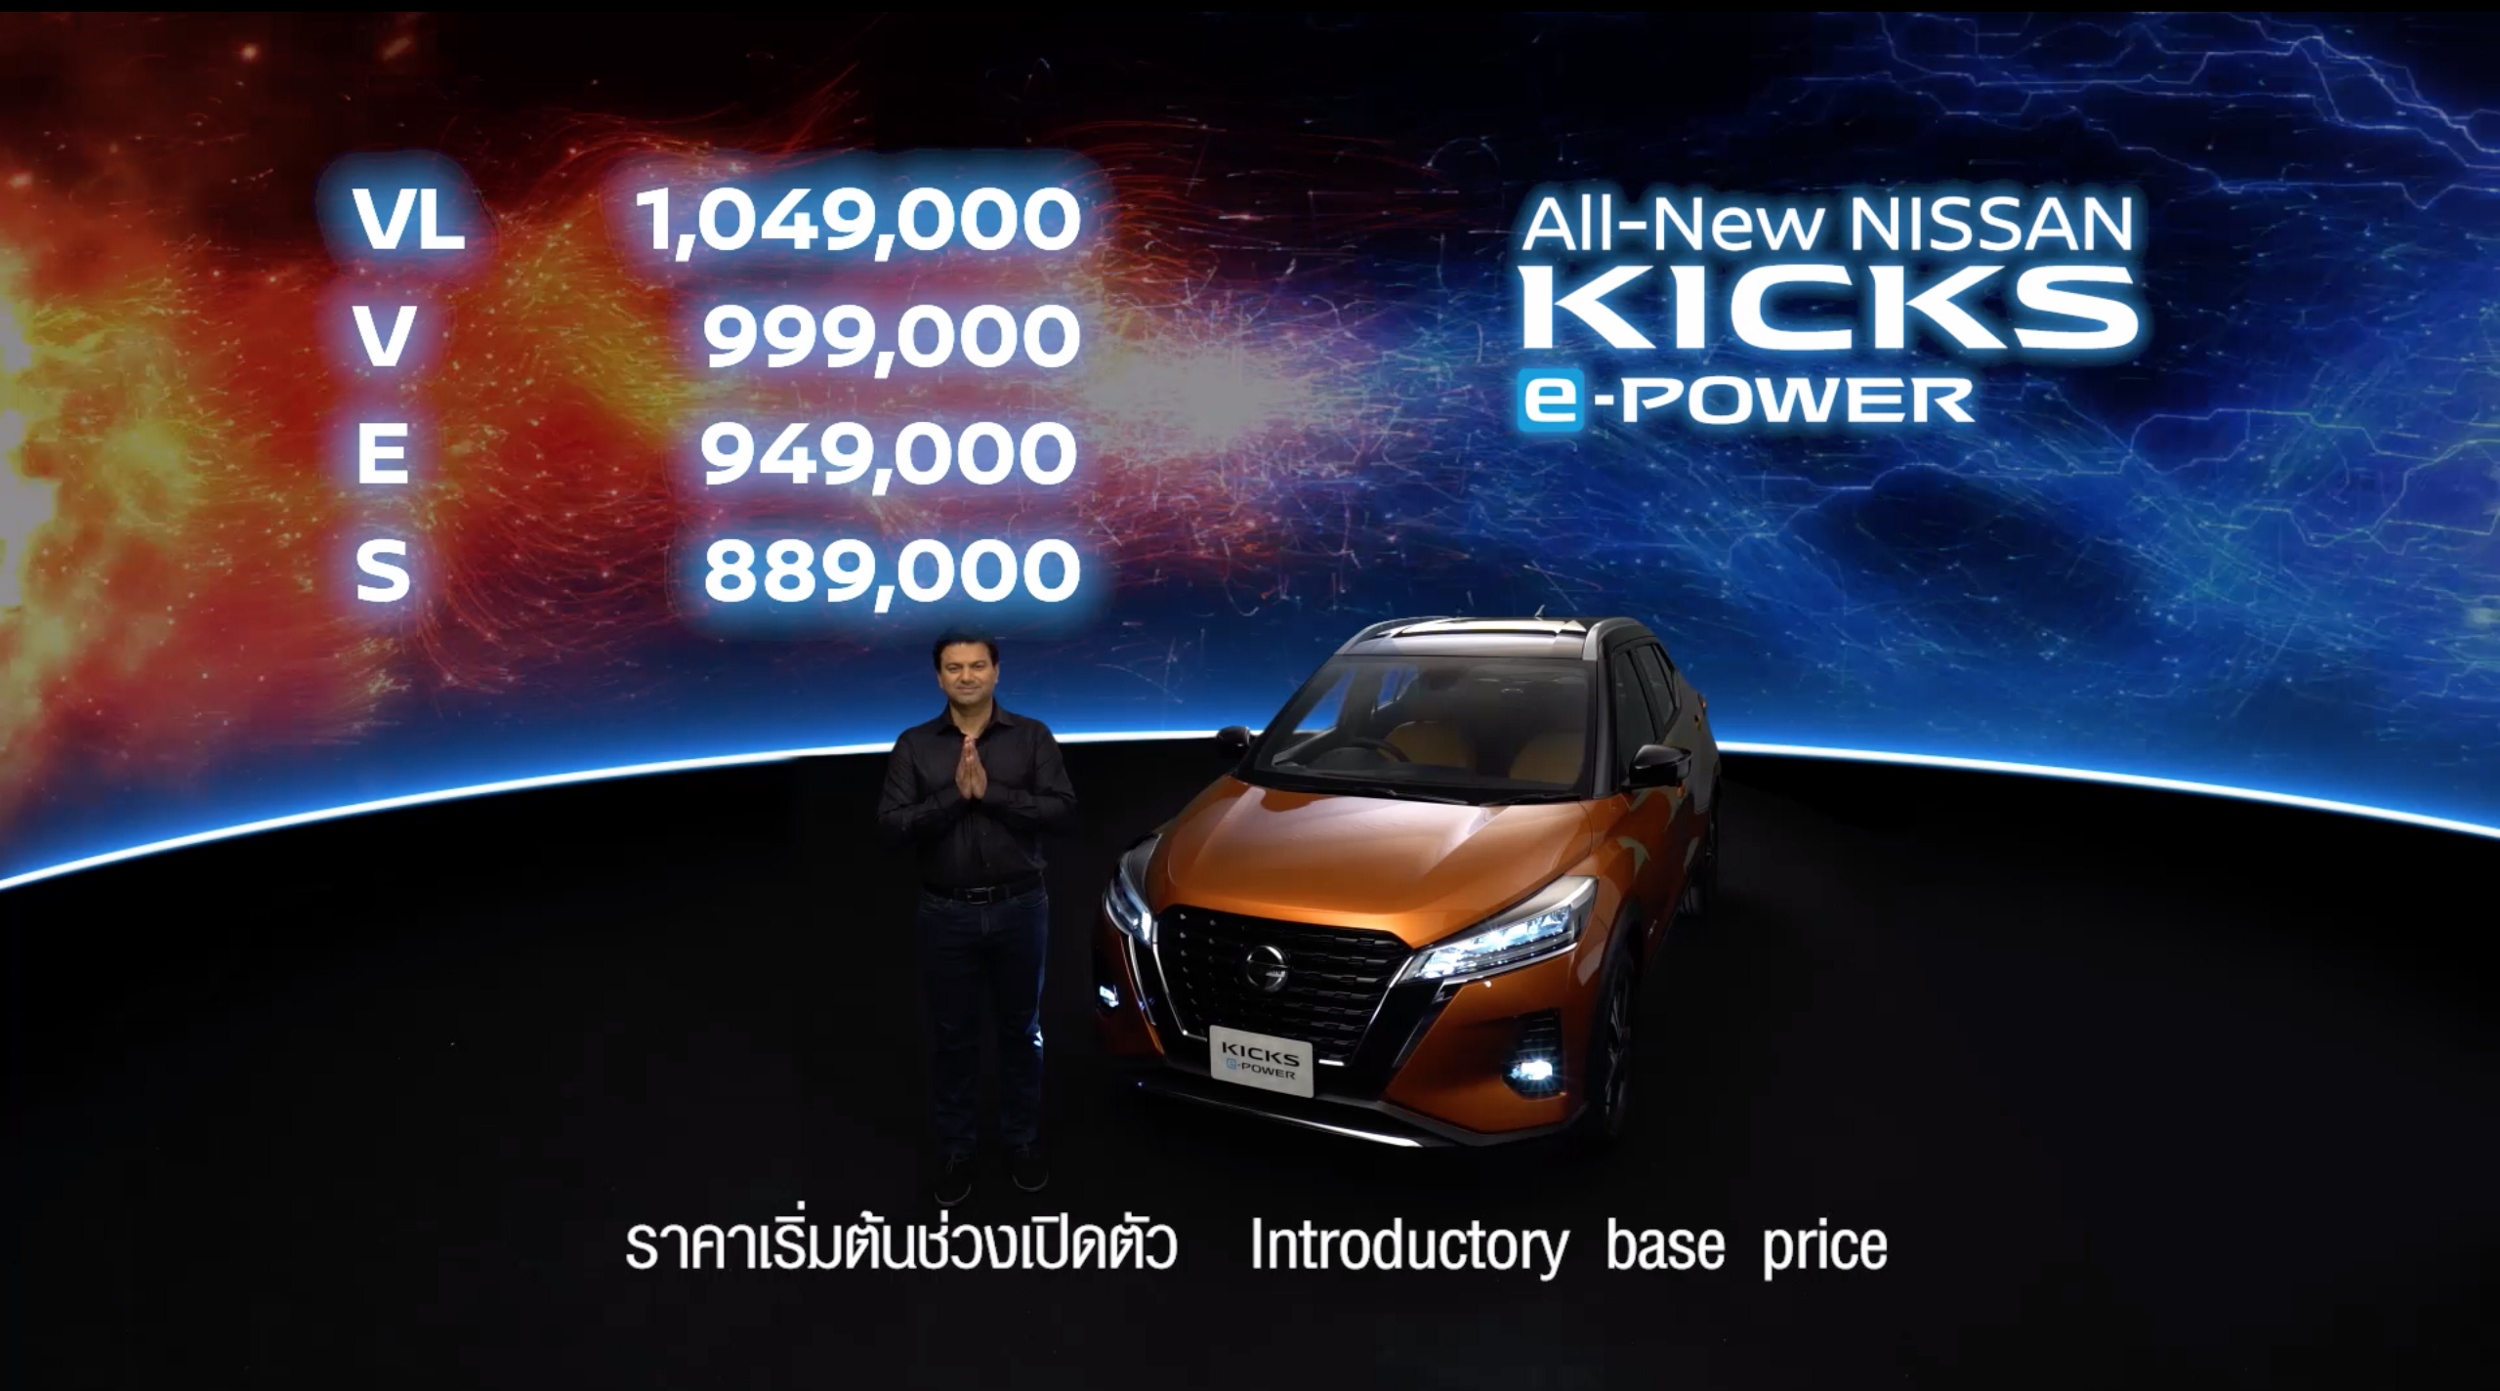 สดๆ ร้อนๆ! เปิดราคา All-new Nissan Kicks e-Power ทุกรุ่นย่อย